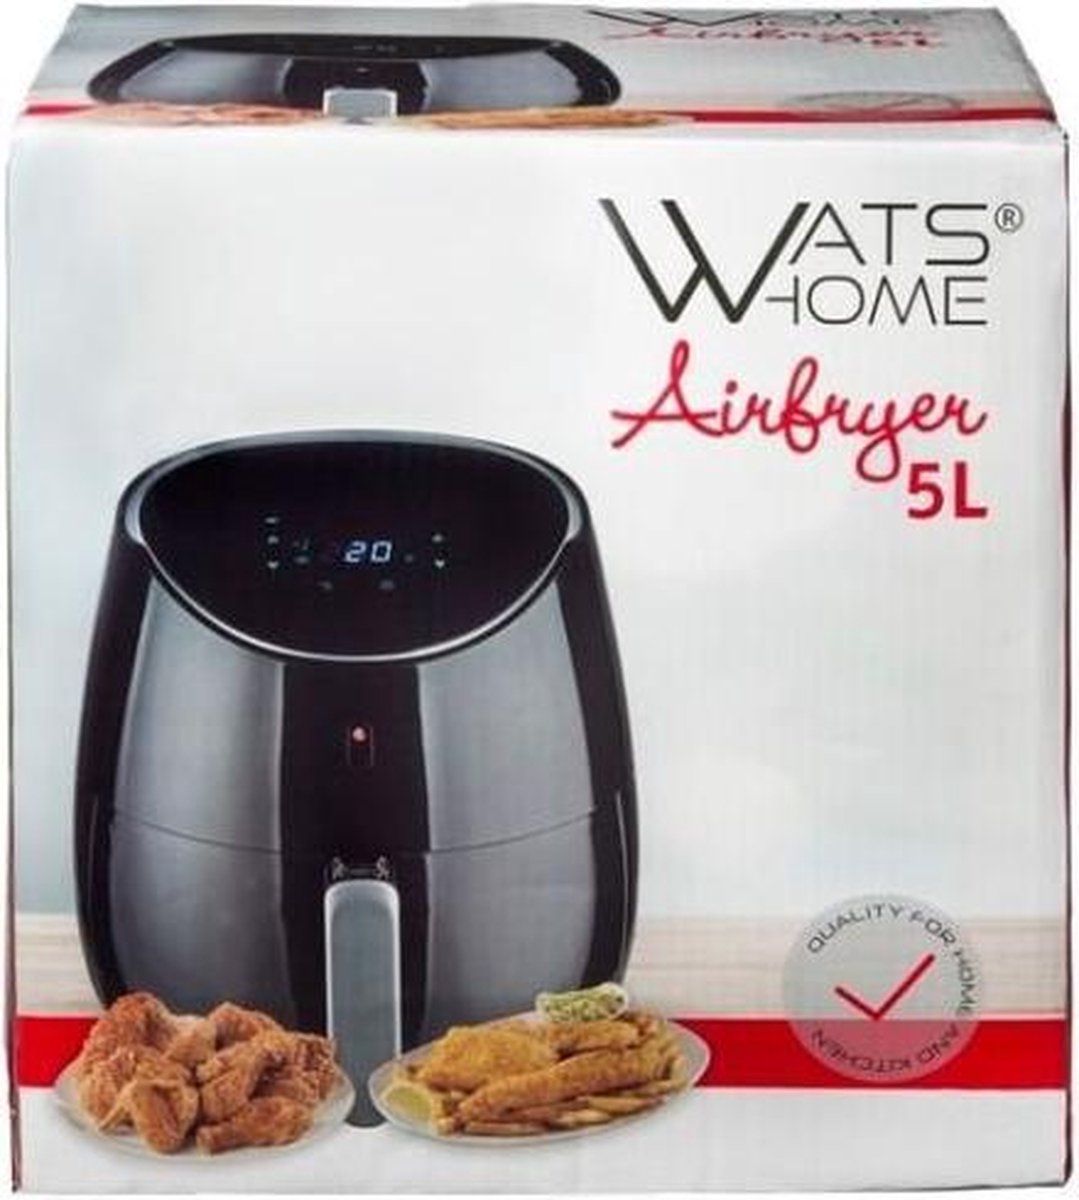 Airfryer - 5 litres - Watshome - affichage numérique - panier amovible -  Friteuse à... | bol.com